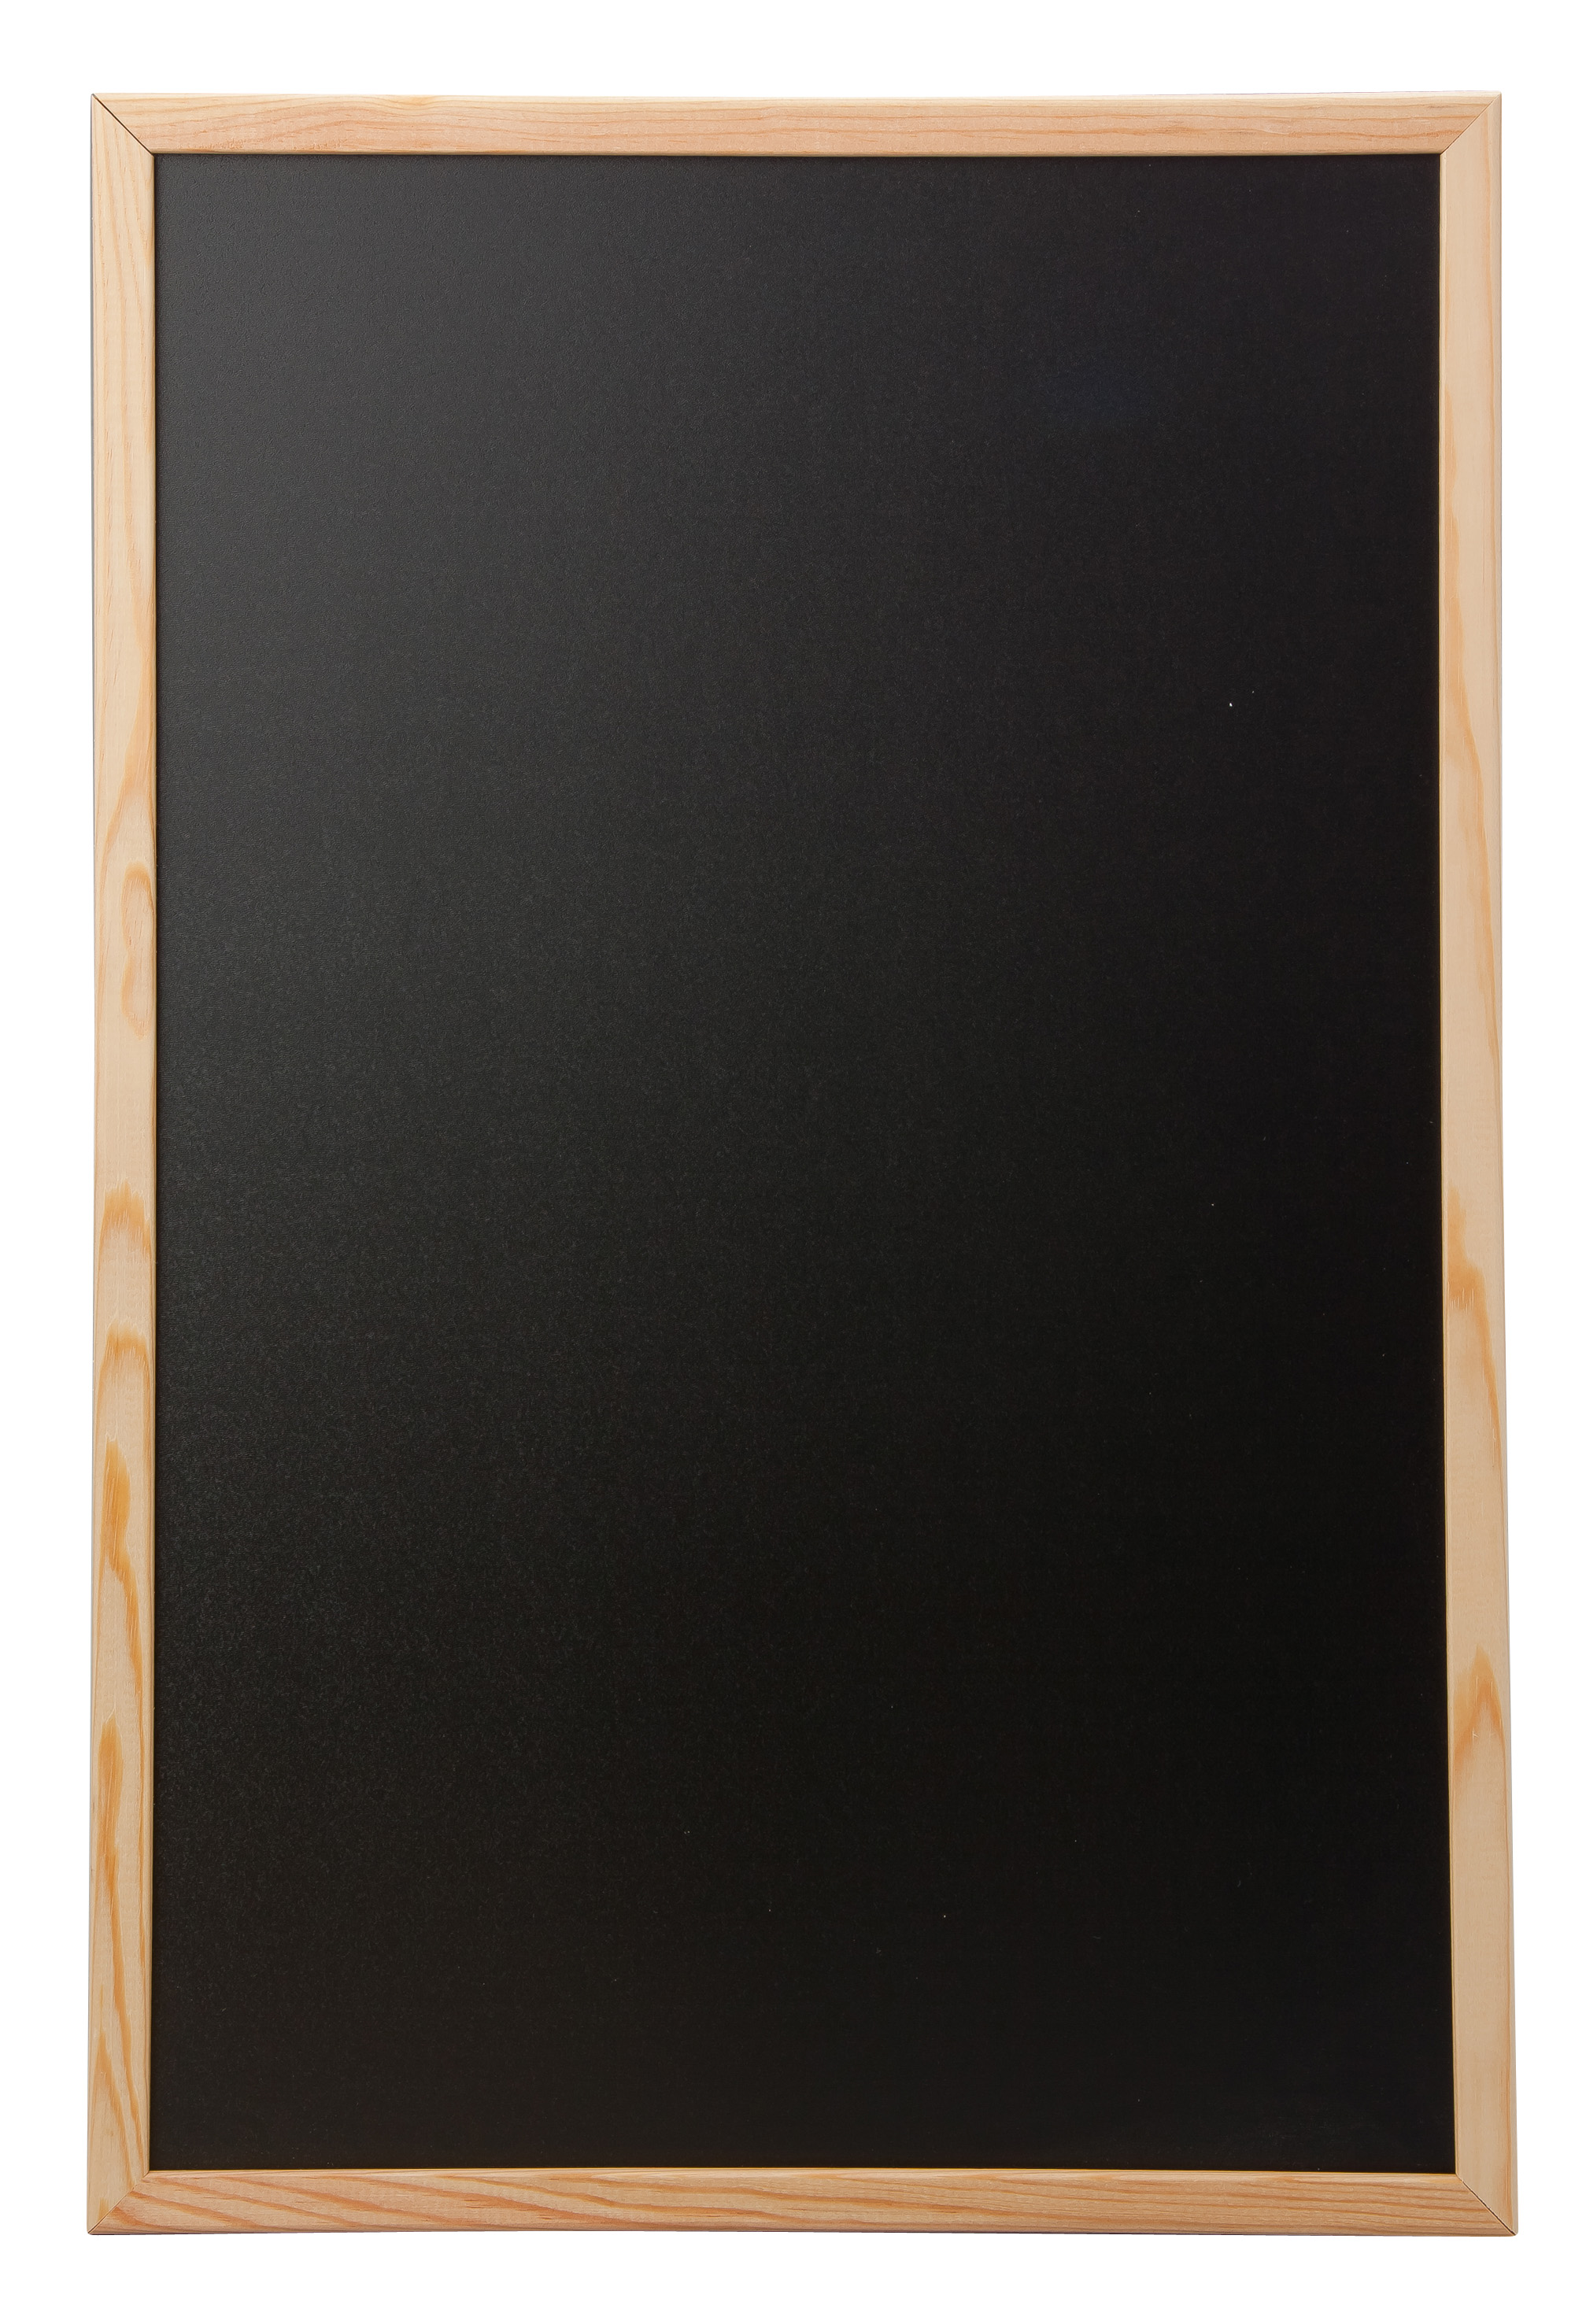 Framed Chalkboard - Overall dimensions 400mm x 600mm | R&R NBS Ltd